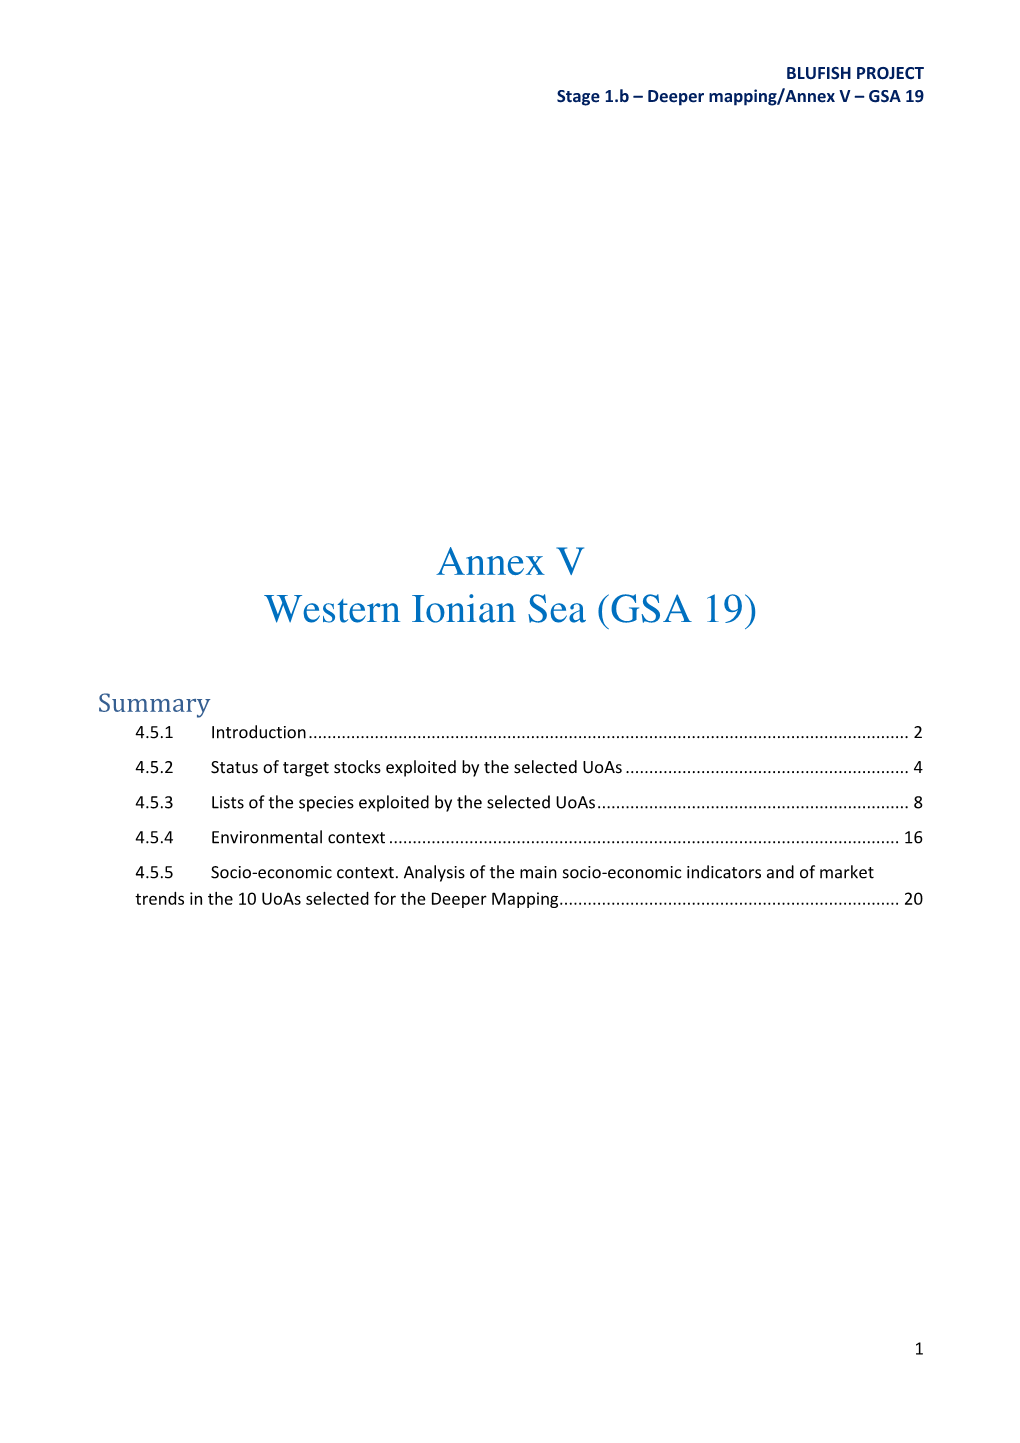 Annex V Western Ionian Sea (GSA 19)